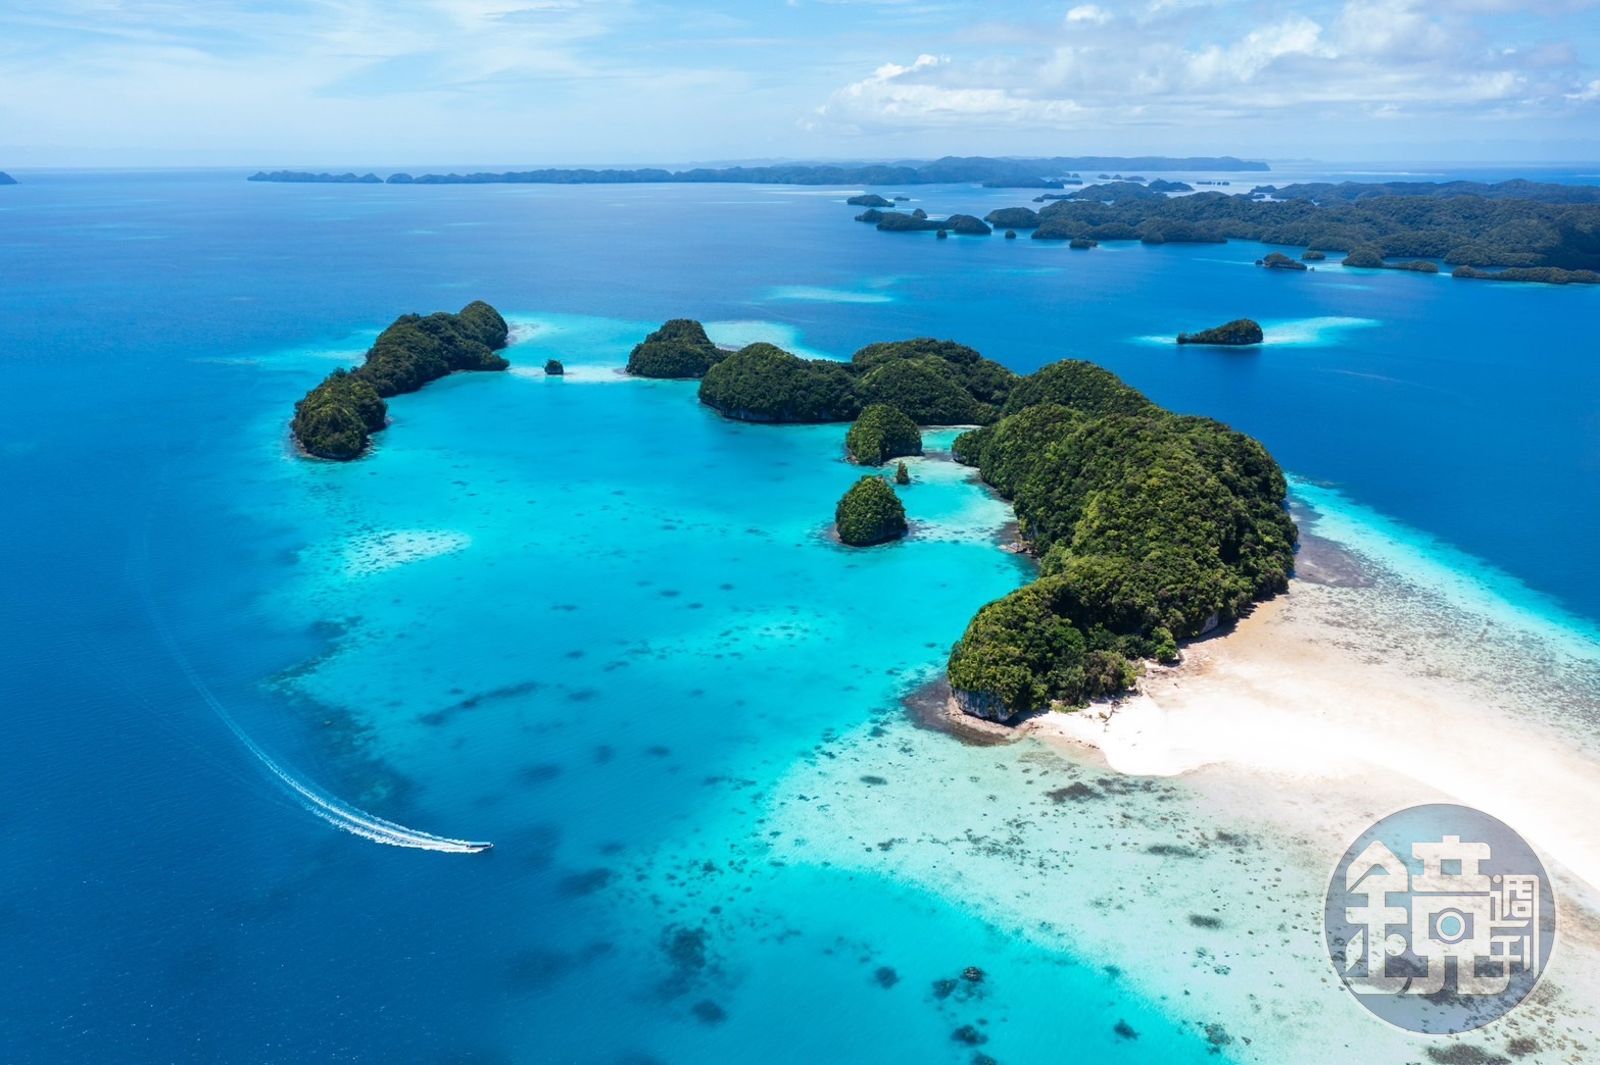 帛琉的洛克群島（Rock Islands）由超過250座石灰岩島嶼組成，是許多潛水客和水下攝影愛好者的天堂。 